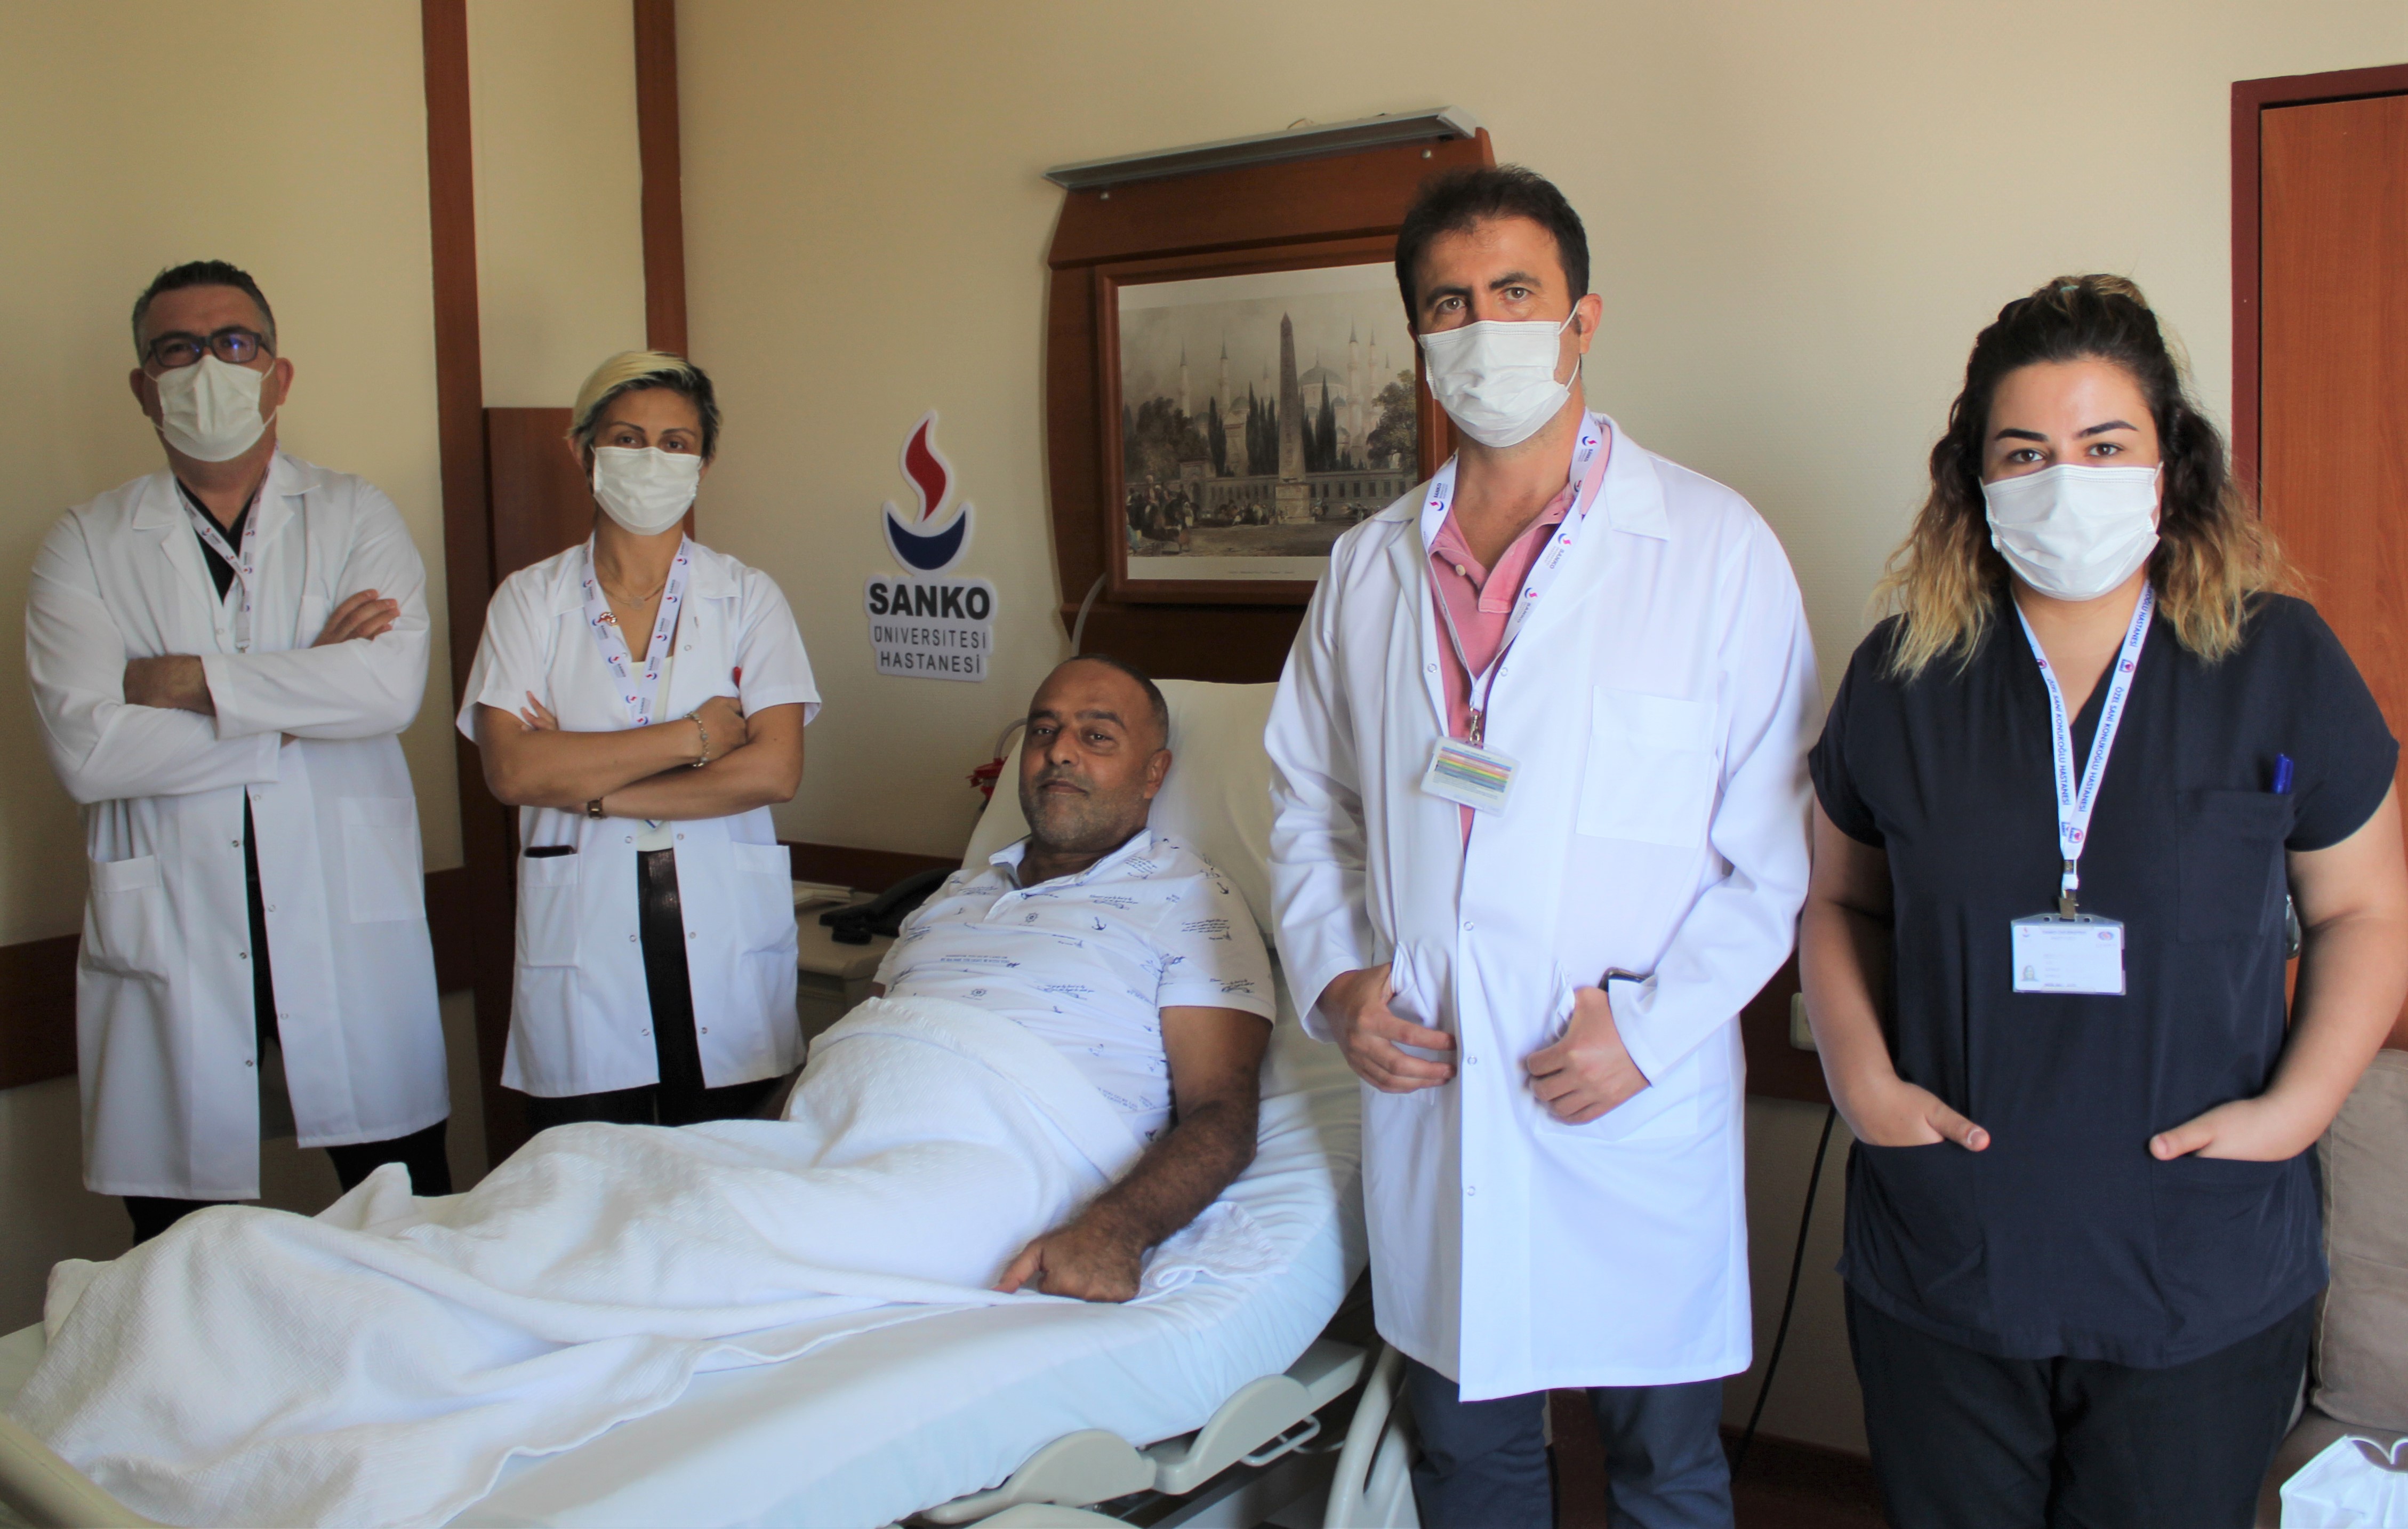 SANKO Üniversitesi Hastanesi Gaziantep’te ilki gerçekleştirdi